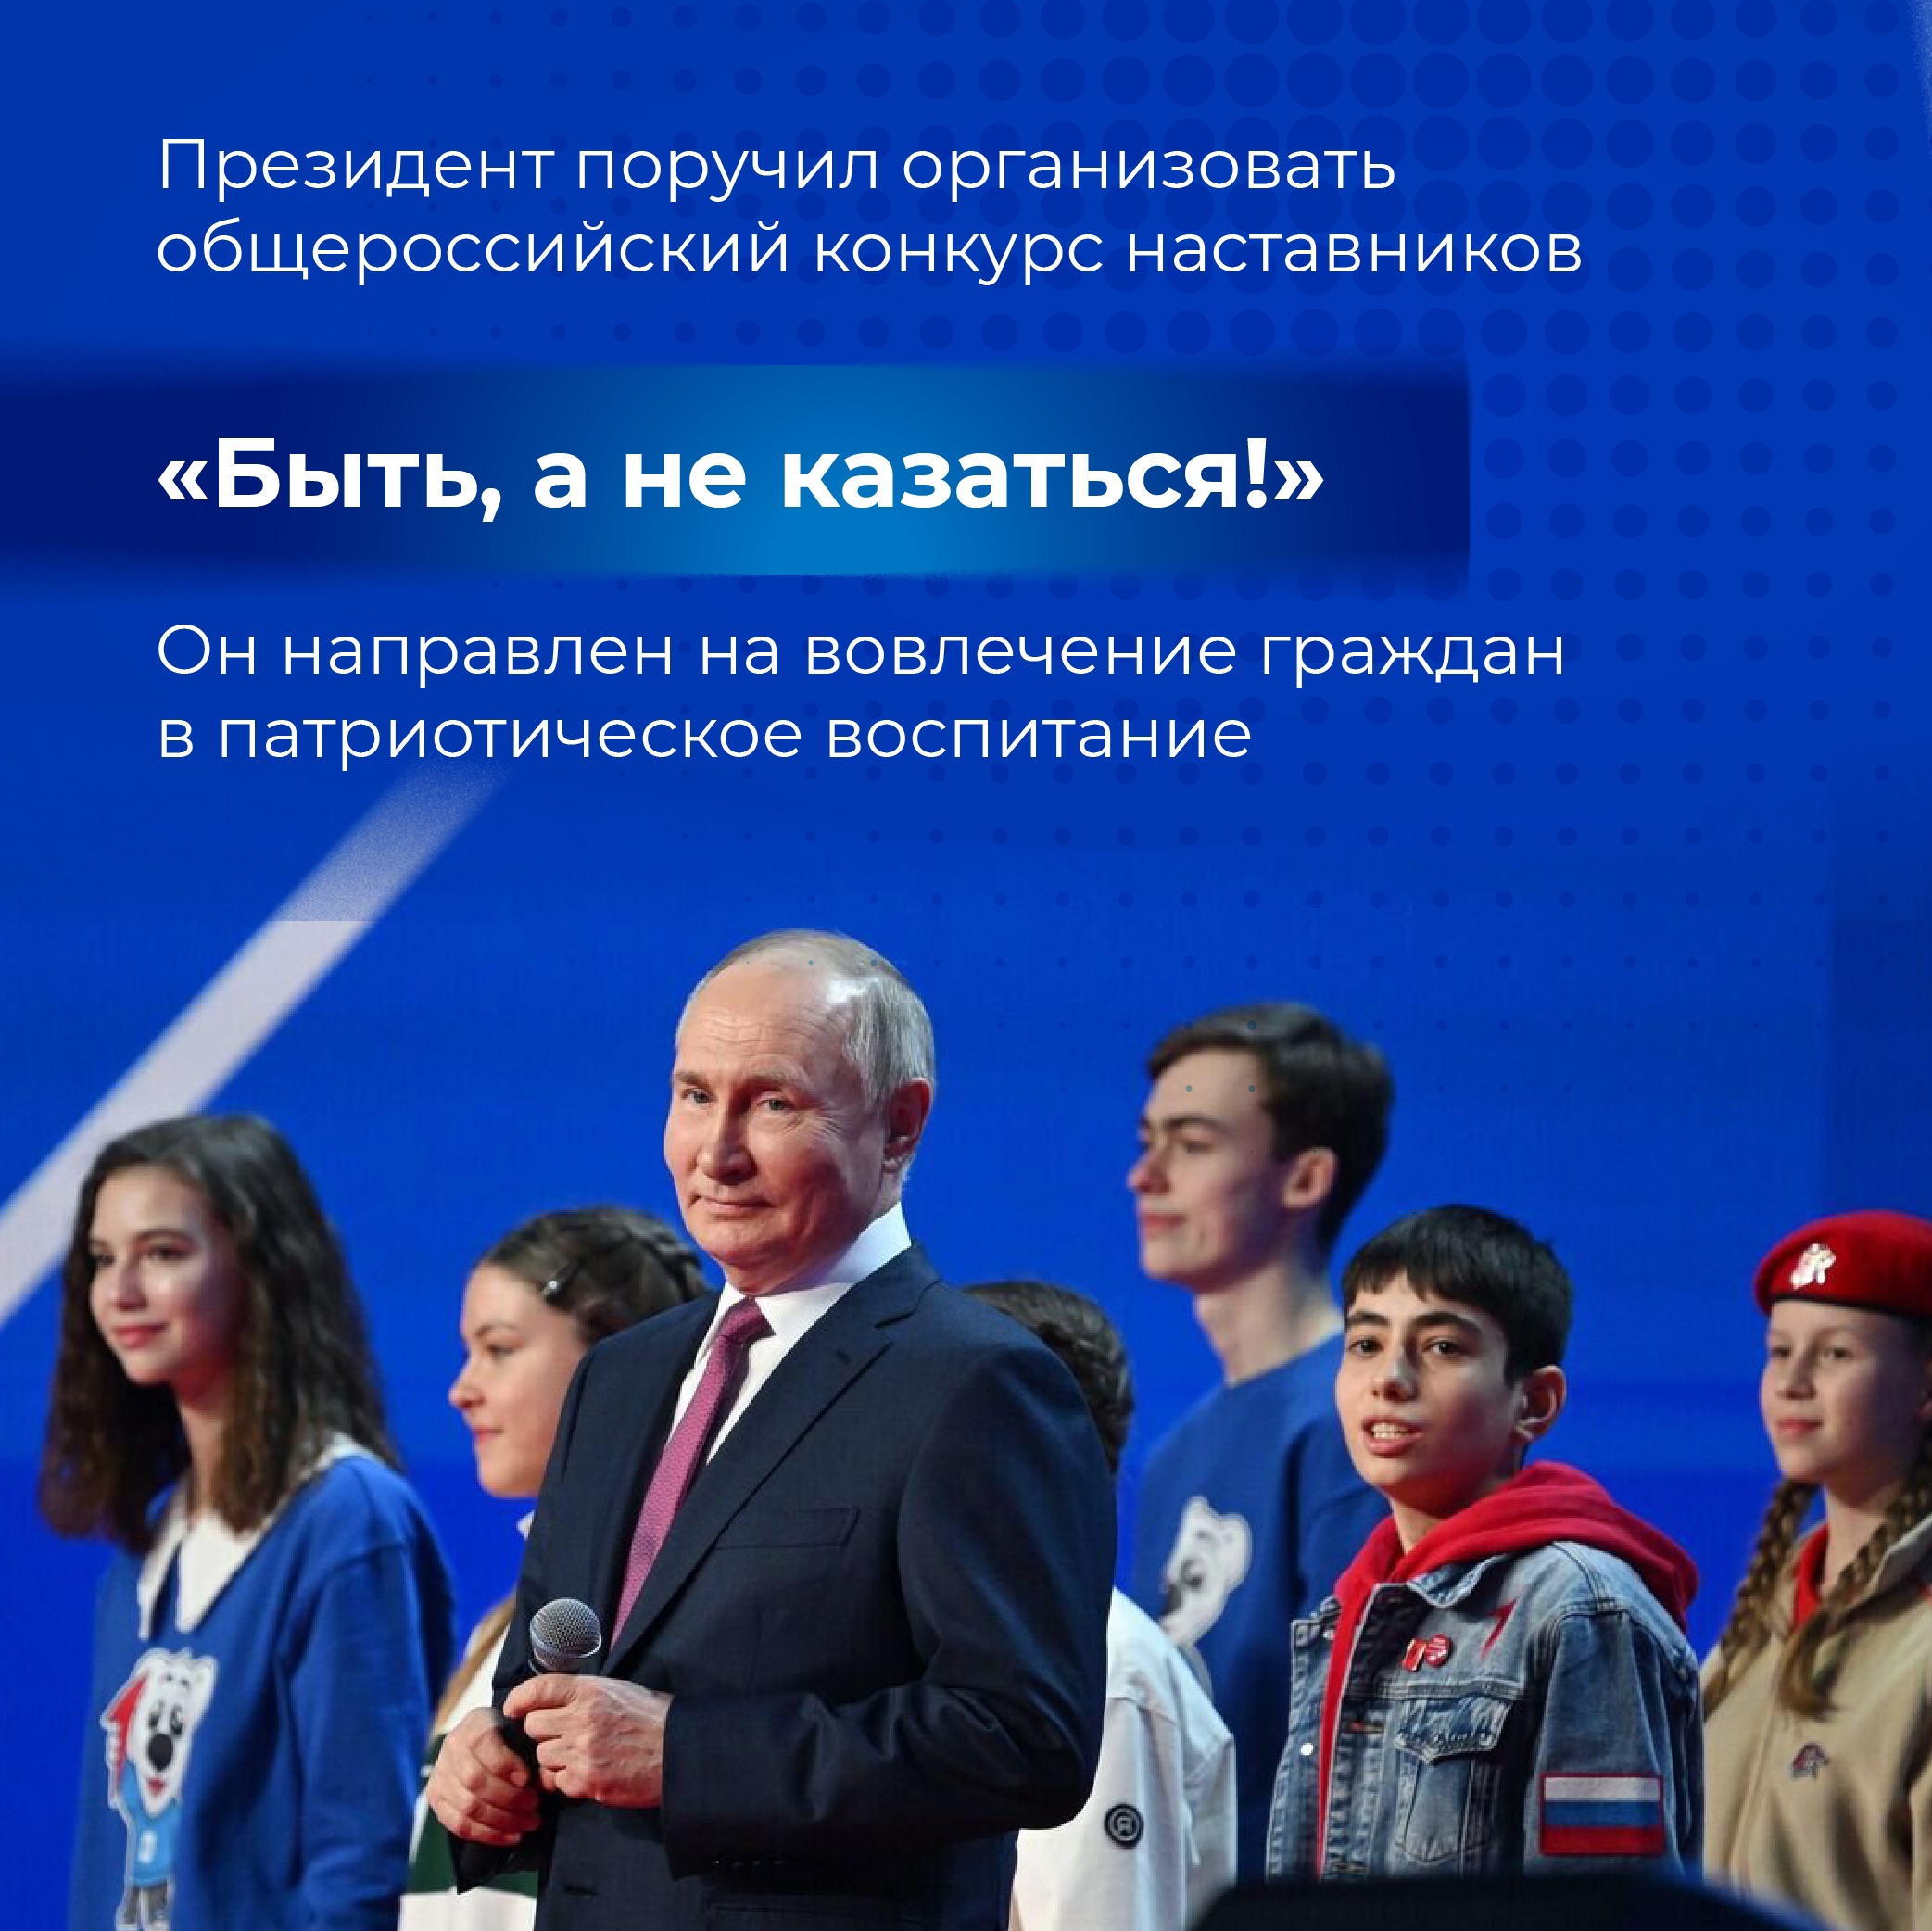 В России проведут конкурс наставников «Быть, а не казаться» 